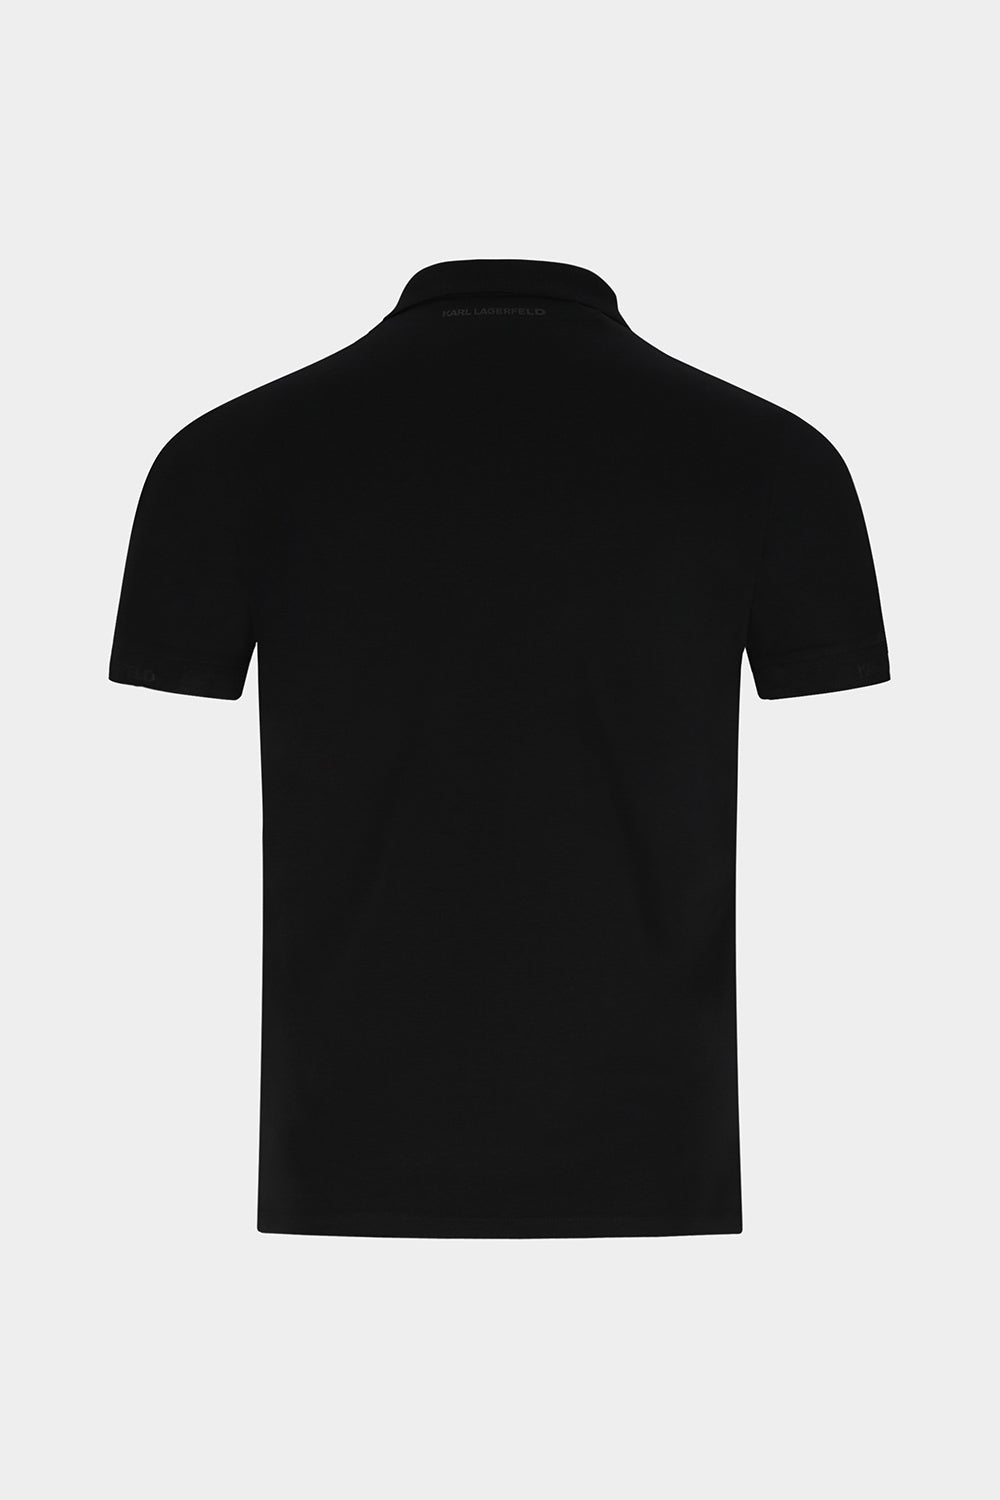 חולצה לגברים בצבע שחור KARL LAGERFELD KARL LAGERFELD Vendome online | ונדום .